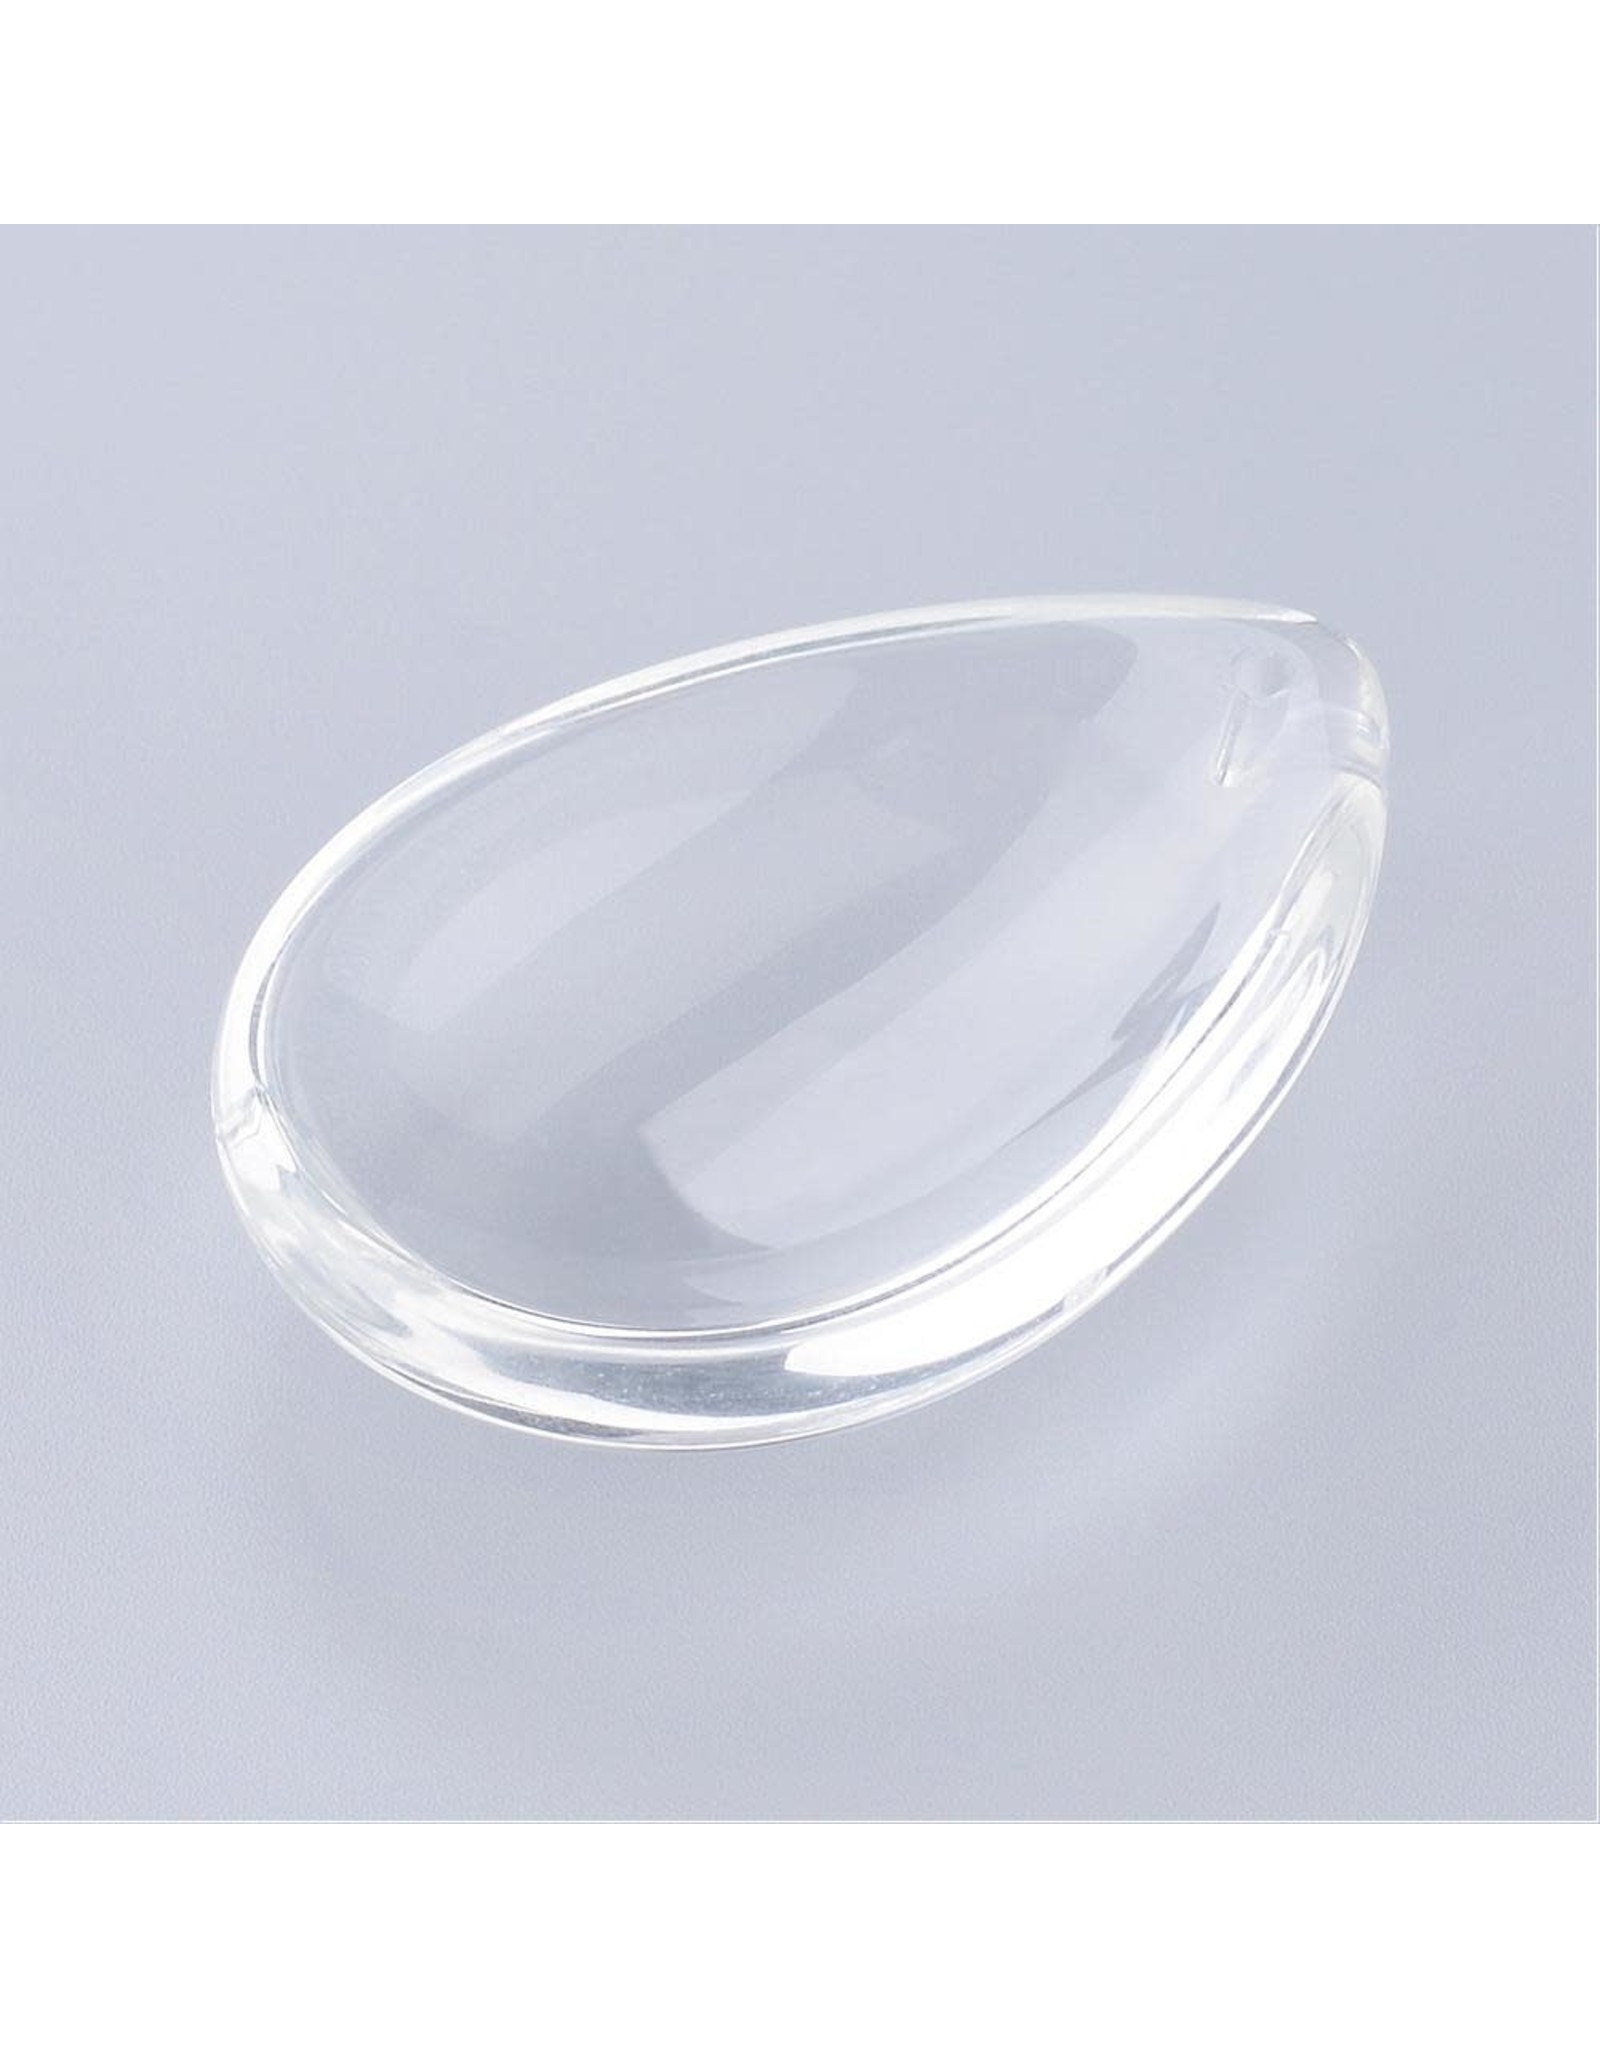 Drop Convex Clear Glass   43x31mm  x1